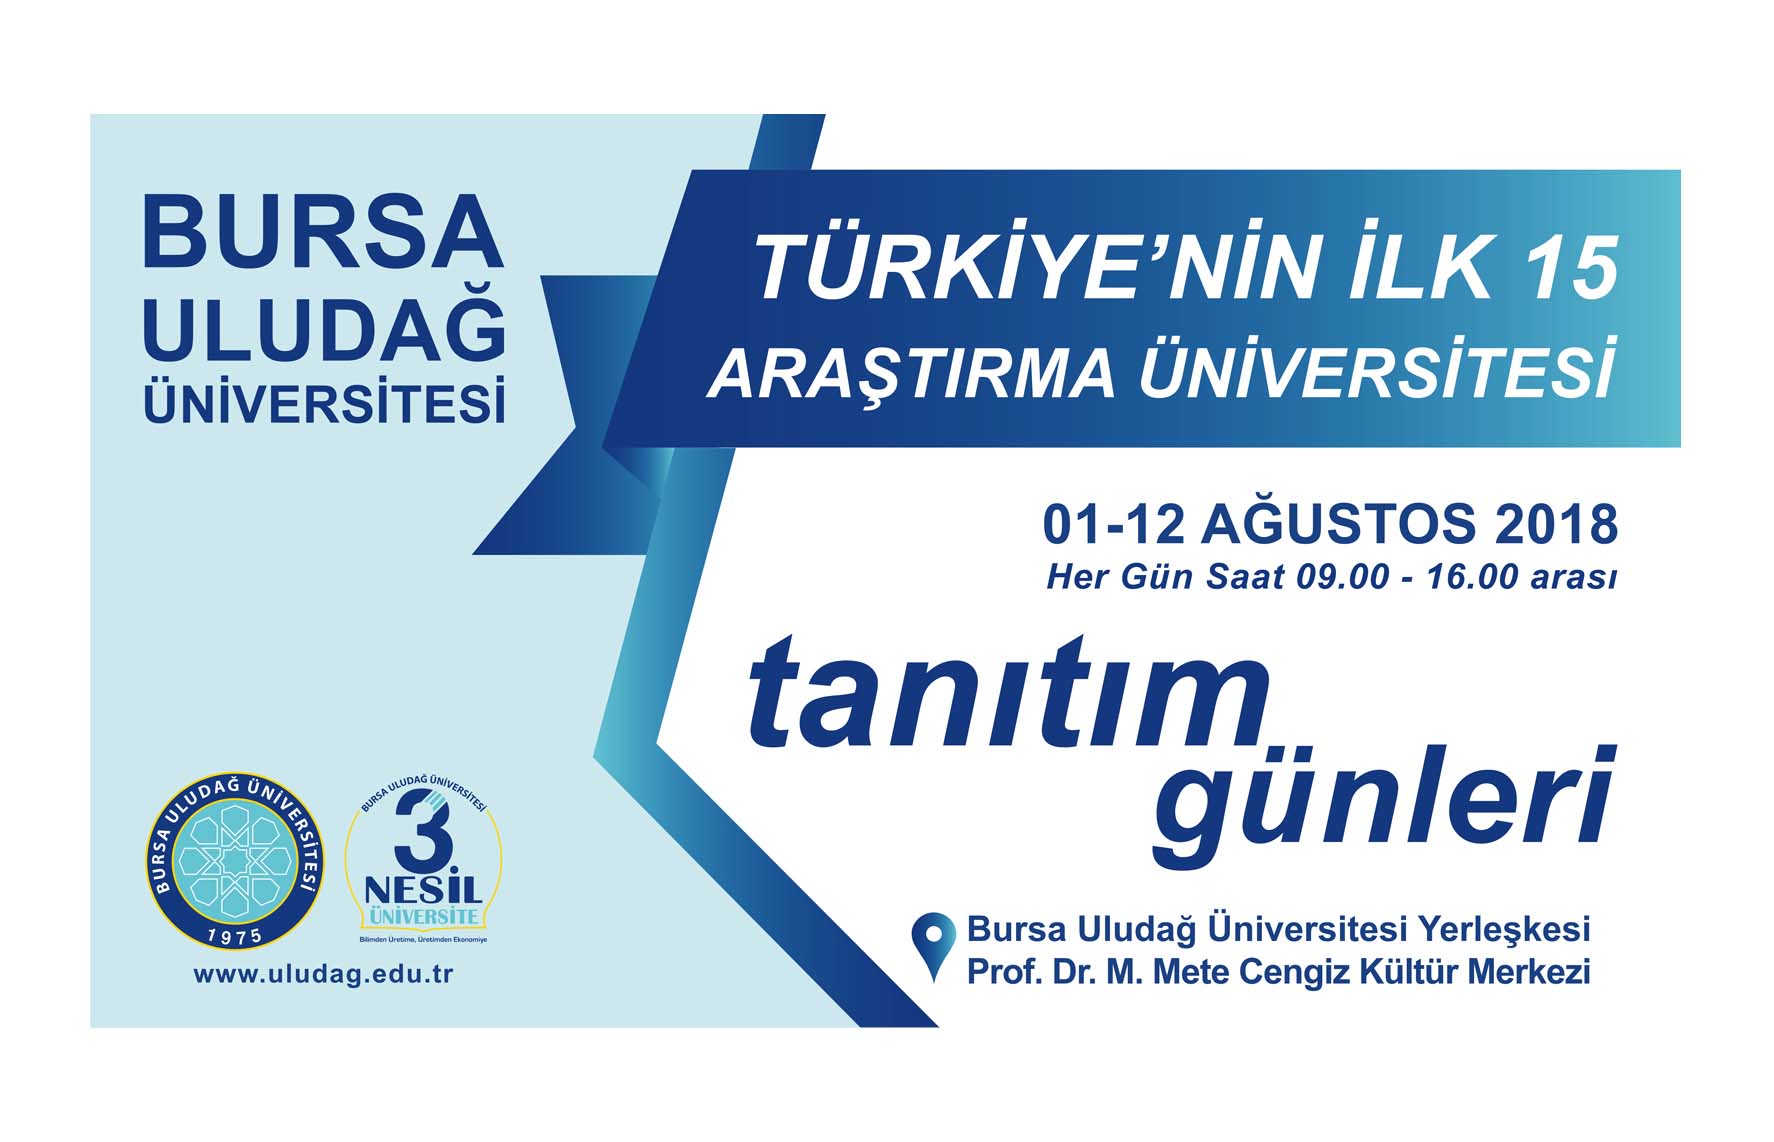  Bursa Uludağ Üniversitesi Tanıtım Günleri Başladı 